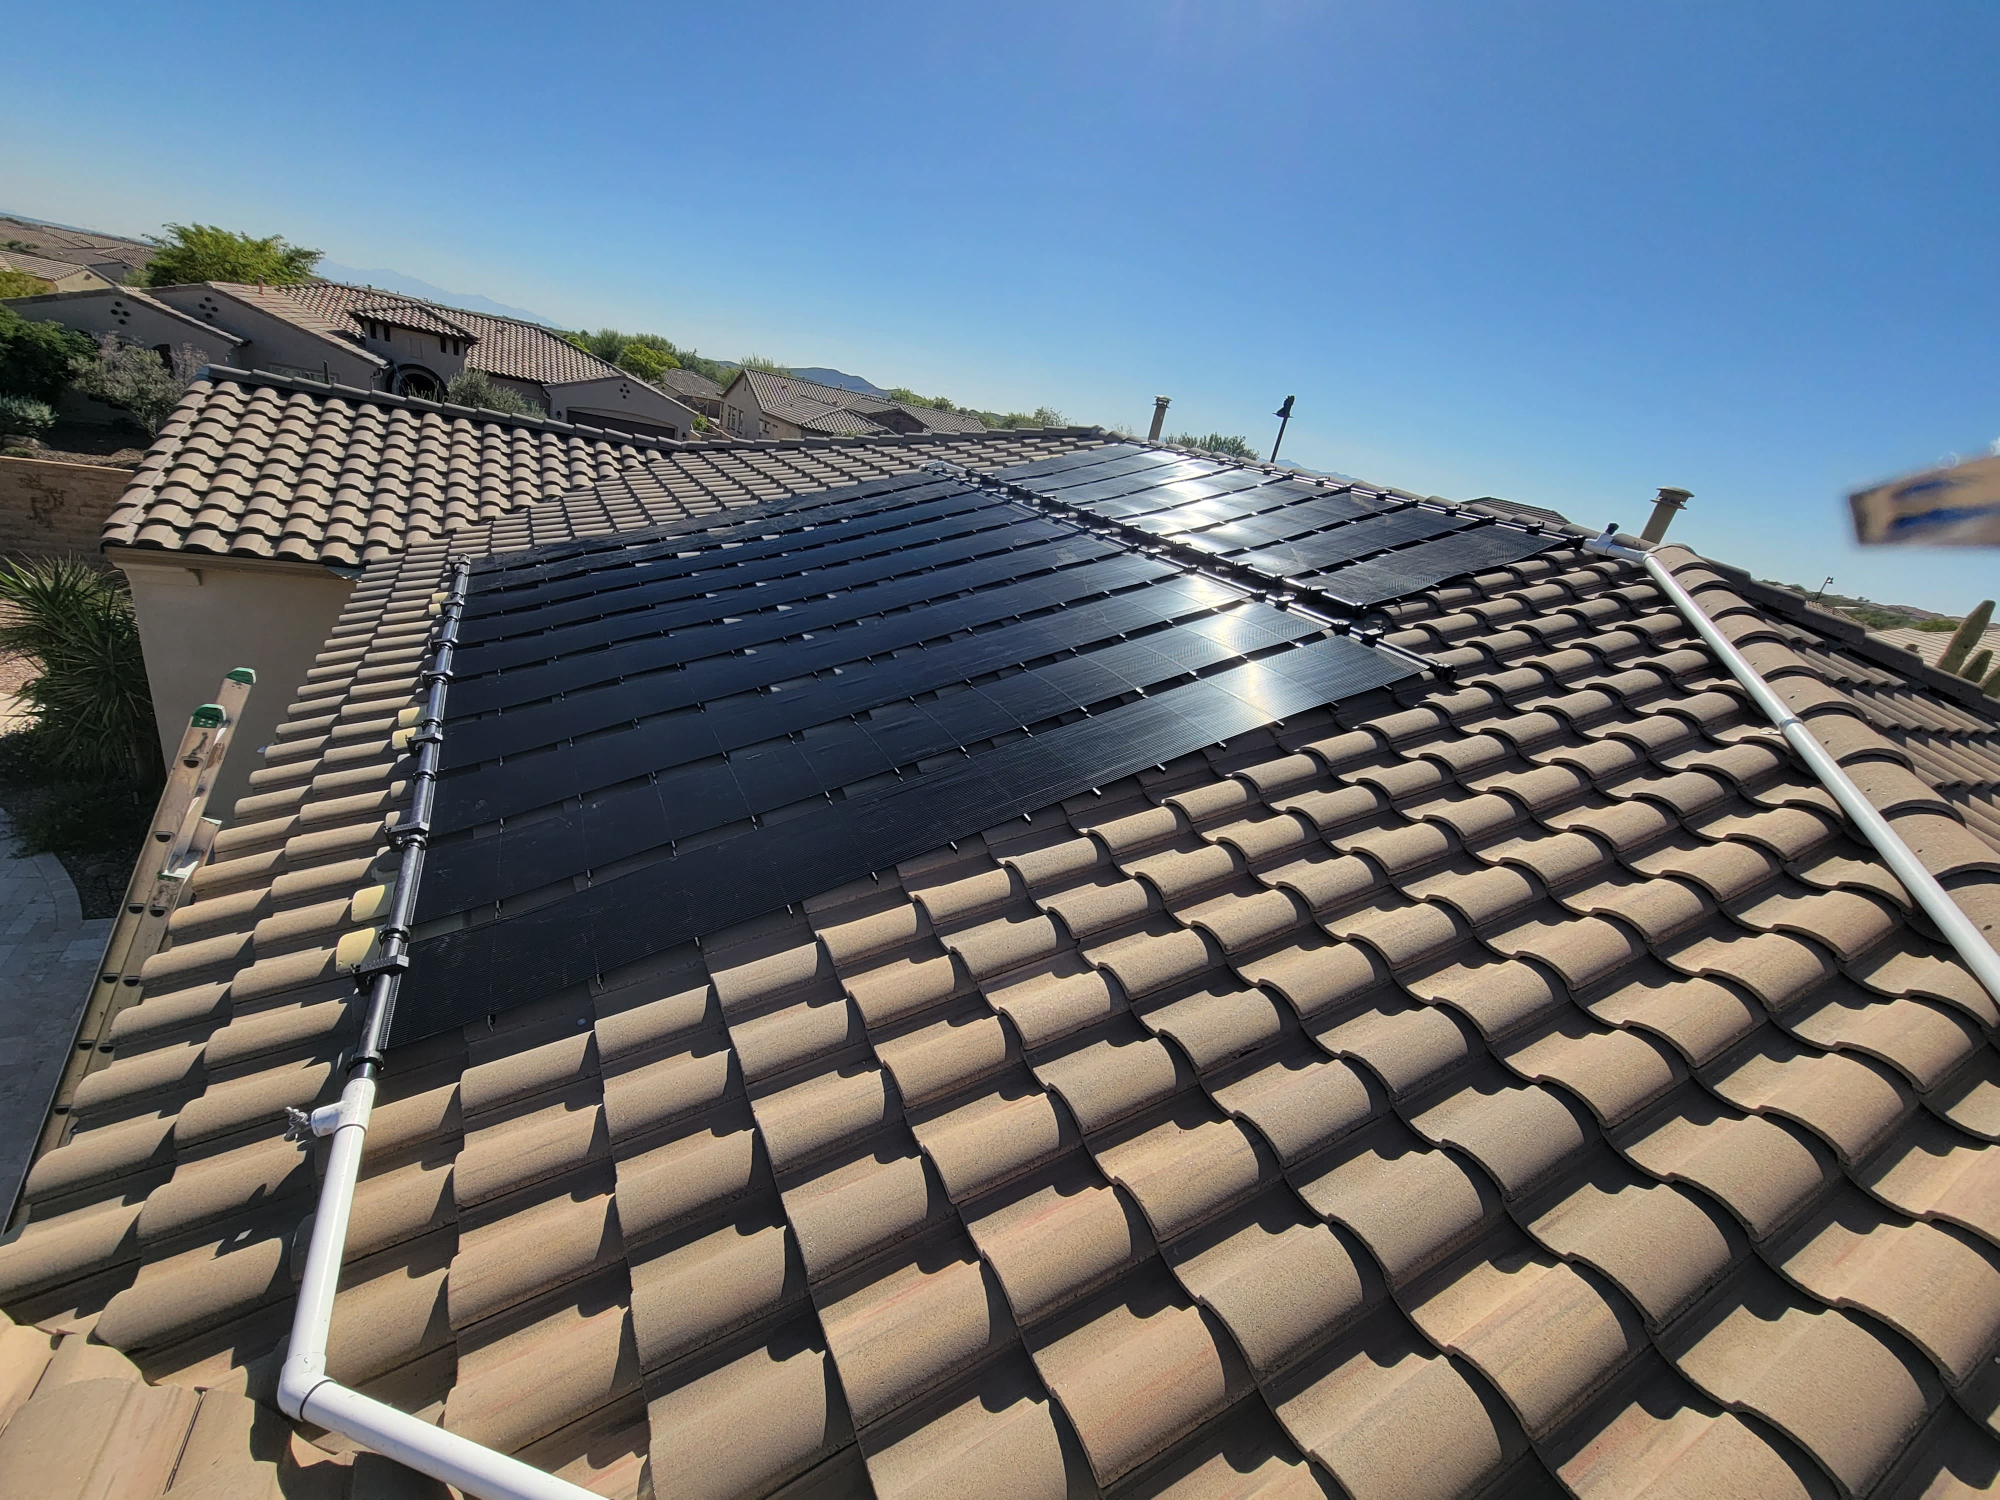 Sunsplash solar pool heating panel on roof